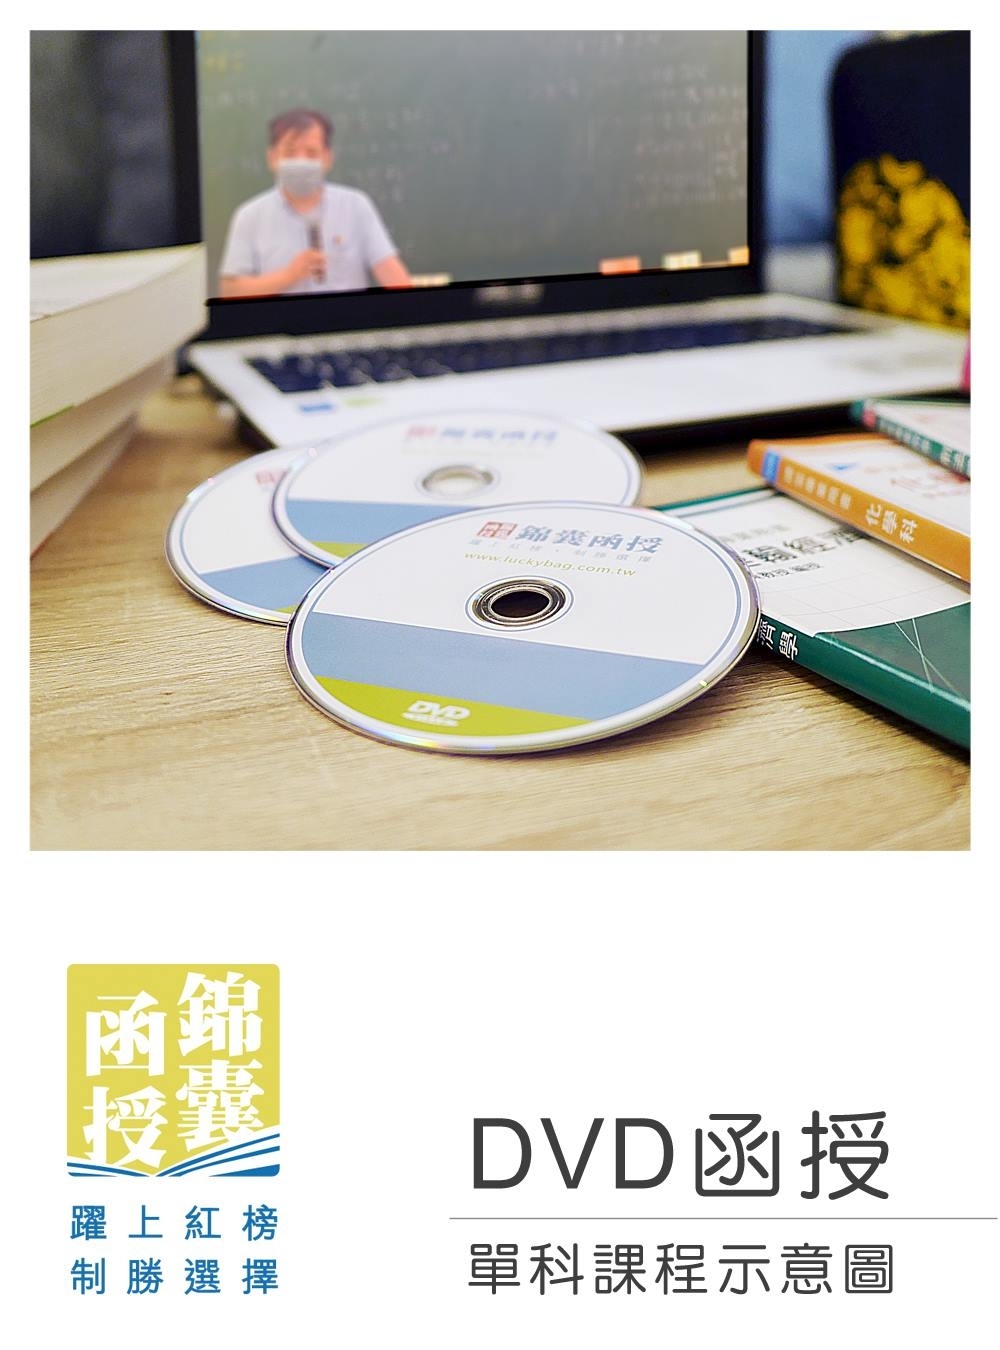 【DVD函授】國籍與戶政法規-單科課程(111版)